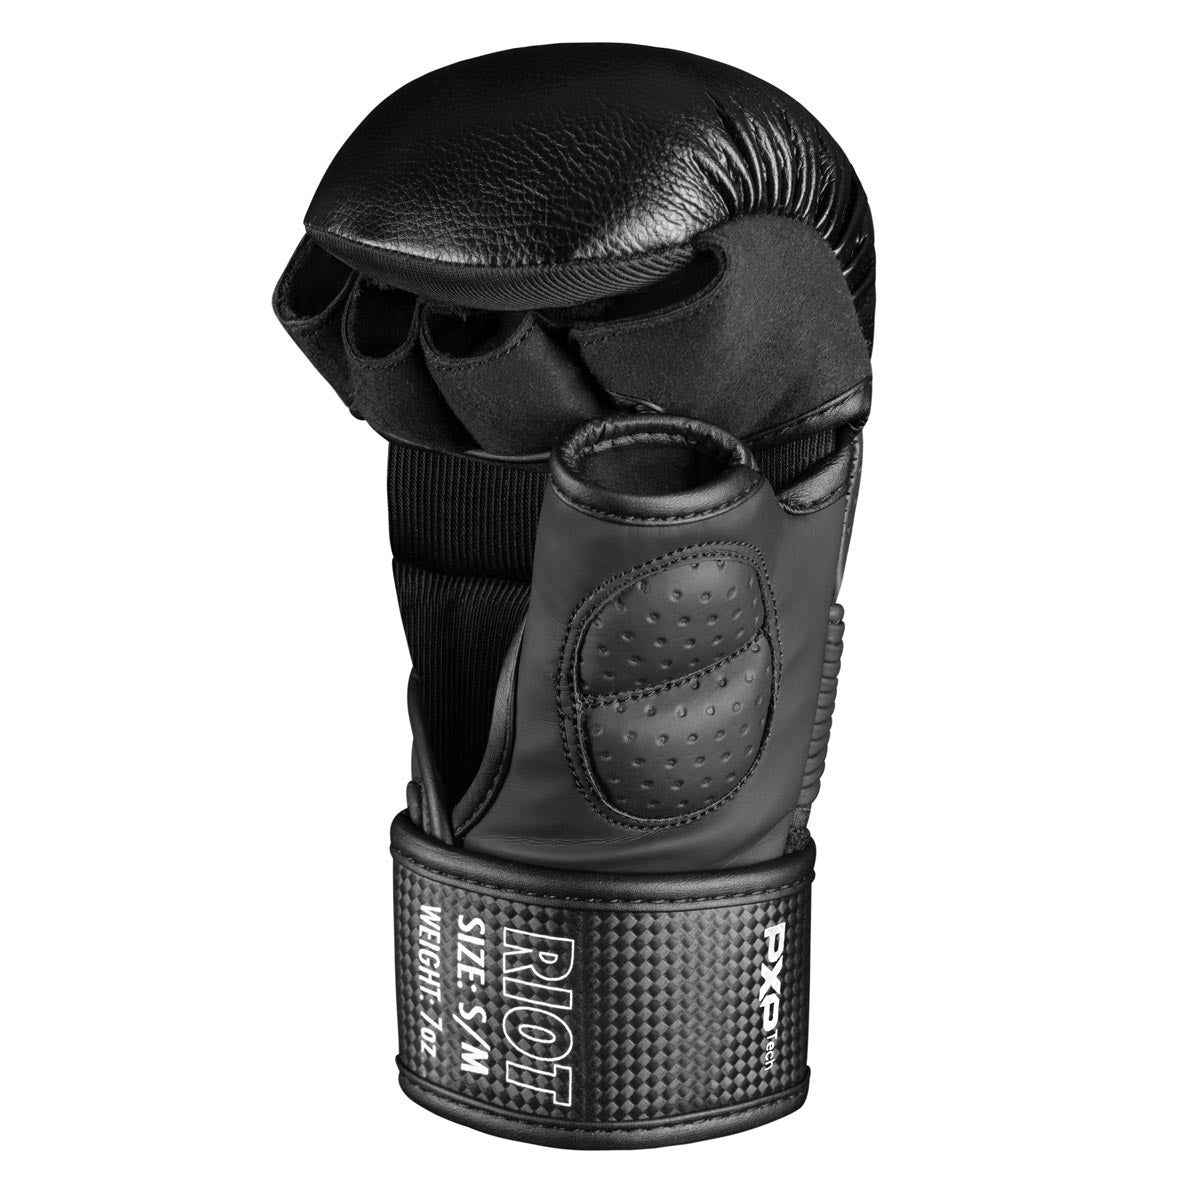 Die Phantom RIOT PRO MMA Sparringshandschuhe. Ideal für dein Kampfsport Training und Amateur Wettkämpfe. Die hochwertigsten und sichersten MMA Handschuhe auf dem Markt.  Perfekte Passform und überragende Qualität für Training und Sparring. Mit extra Schutz des Daumens.